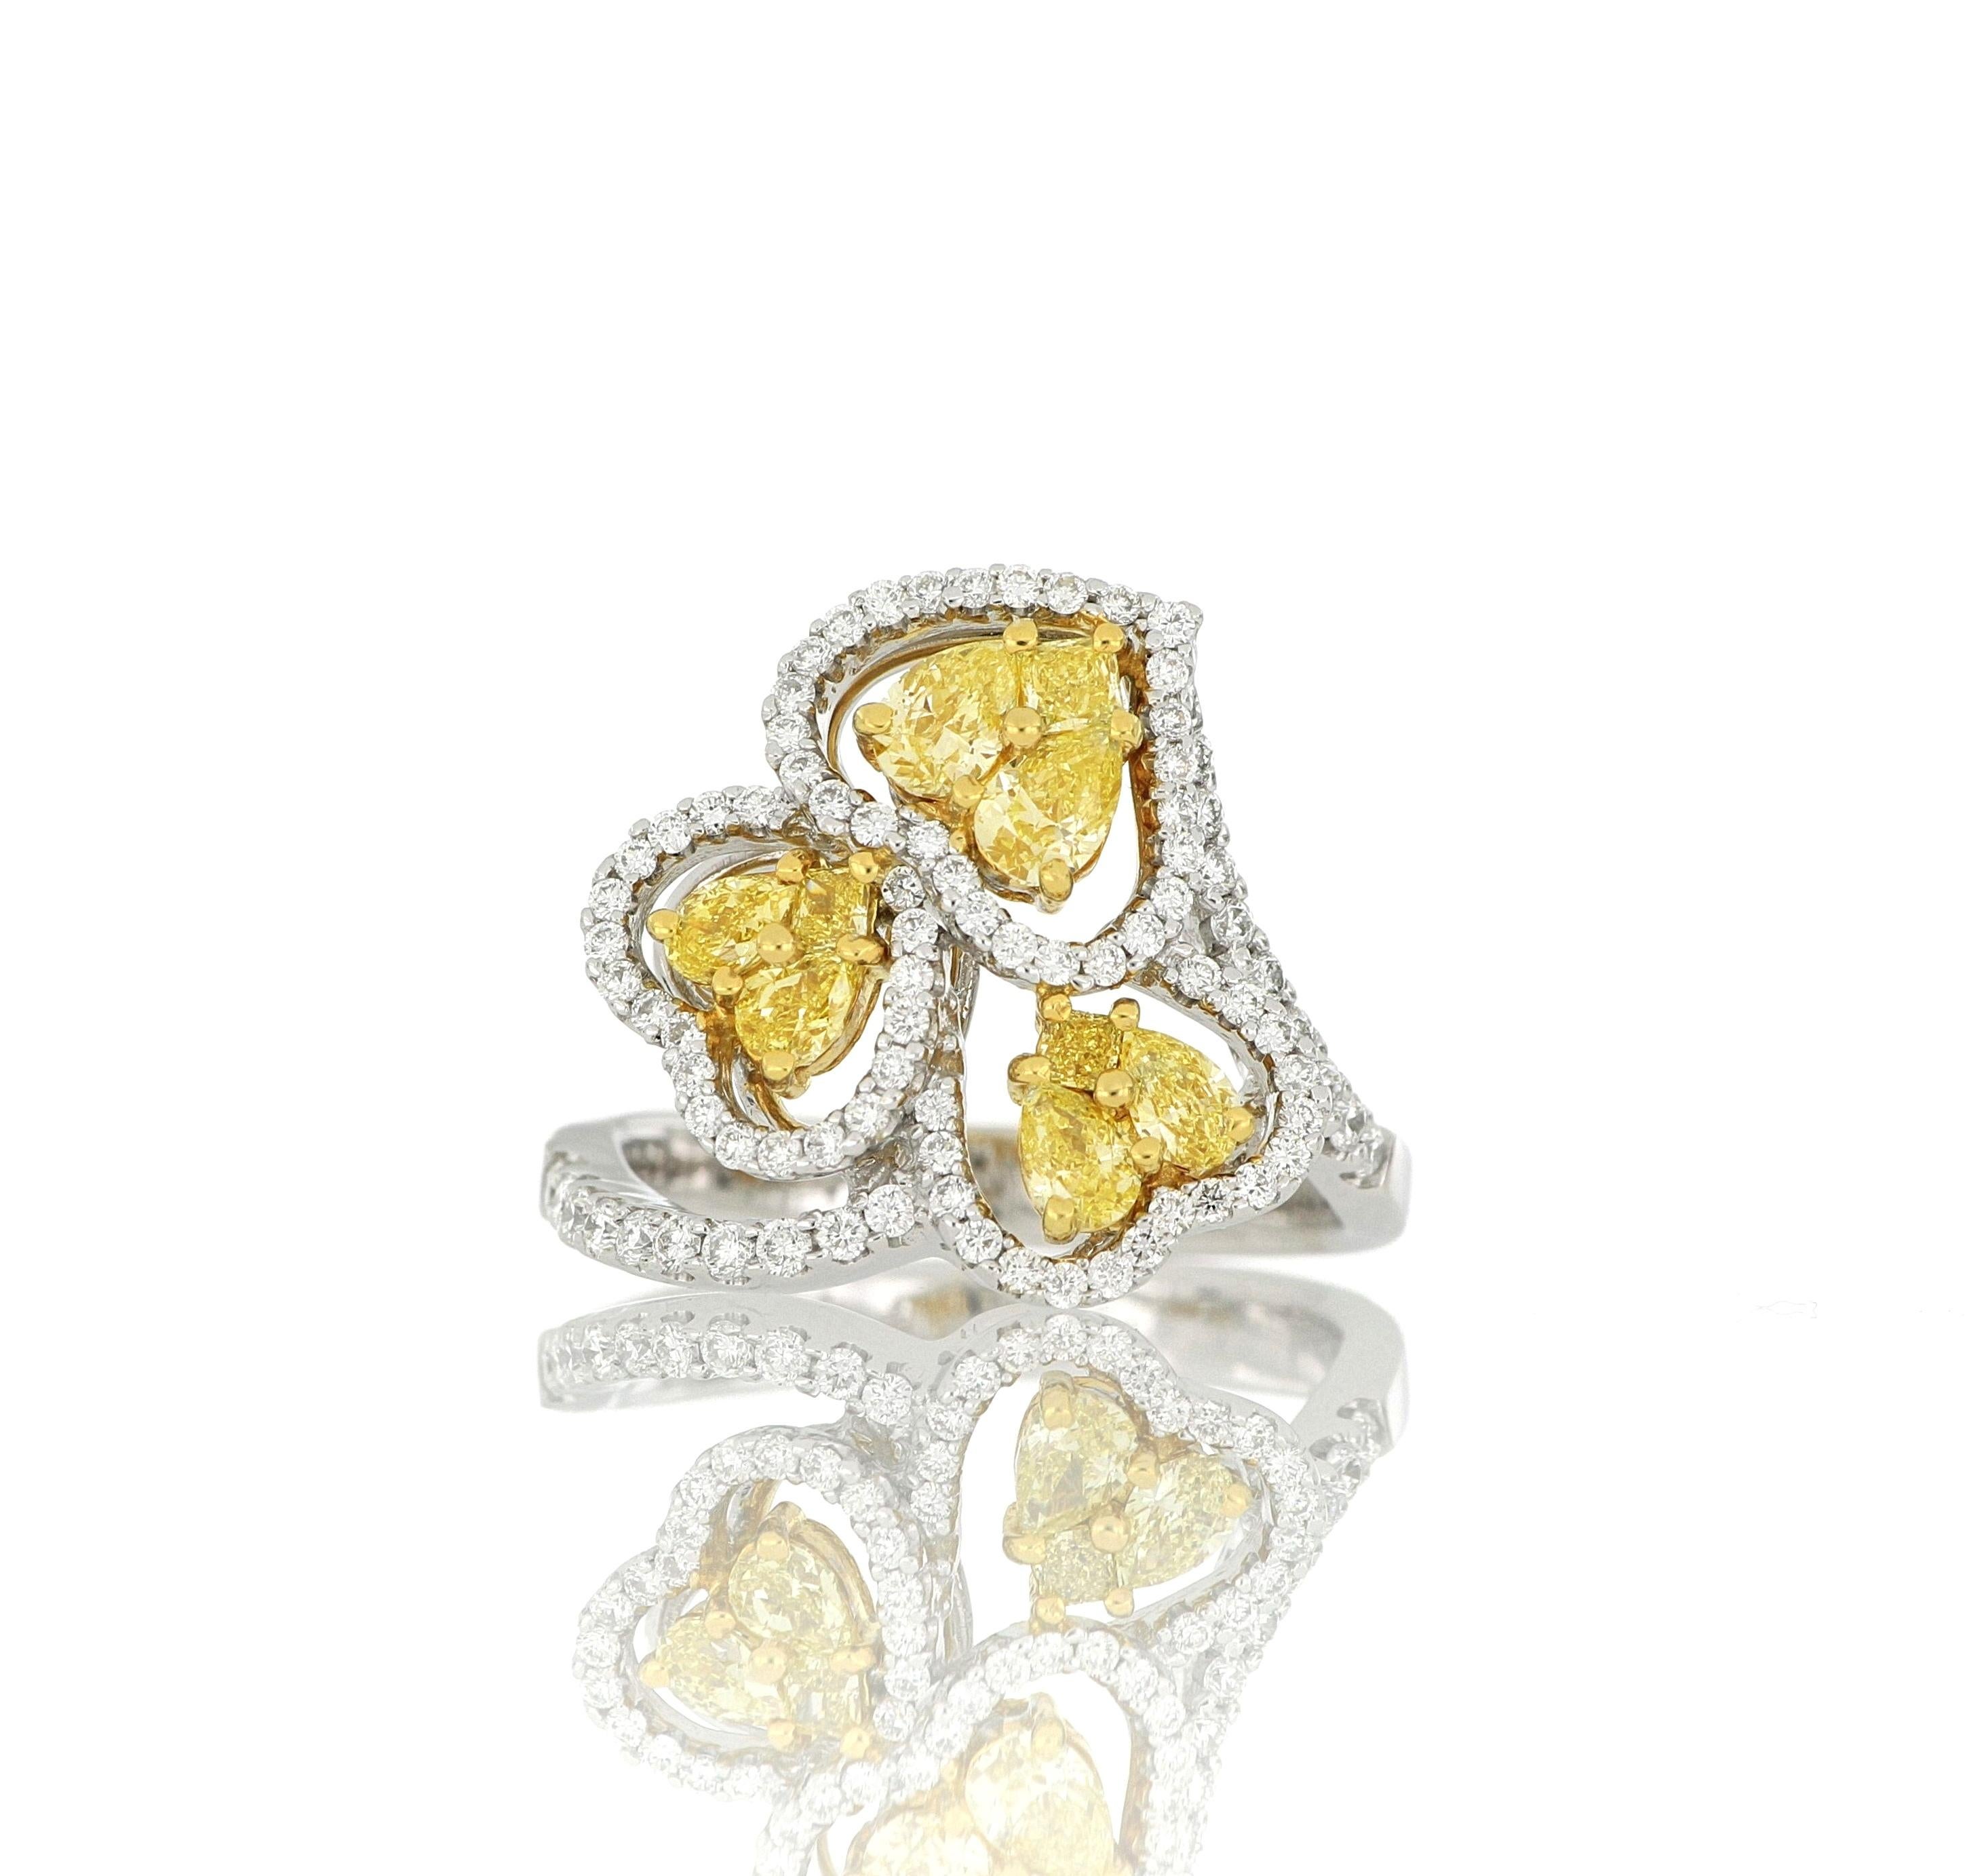 Bague en diamant jaune naturel, sertie de diamants de couleur jaune clair à jaune intense pesant environ 0,86 carats en 3 grappes en forme de cœur, entourés de diamants blancs de taille brillant pesant environ 0,90 carats, montée en or blanc 18